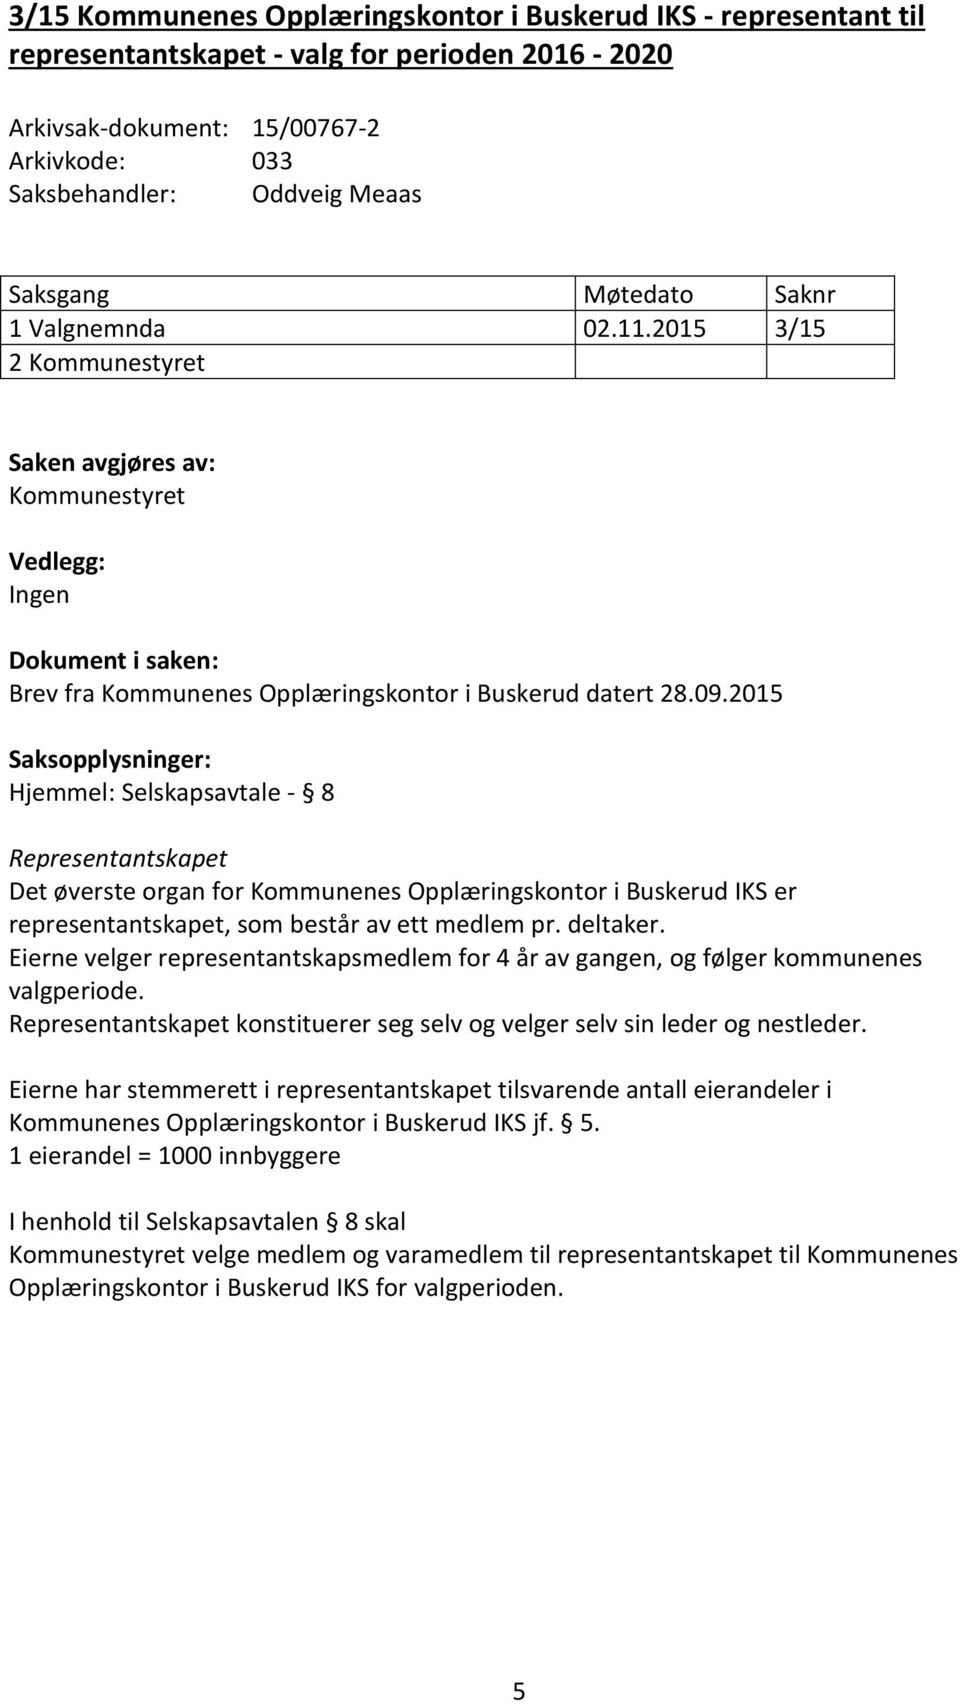 2015 Hjemmel: Selskapsavtale - 8 Representantskapet Det øverste organ for Kommunenes Opplæringskontor i Buskerud IKS er representantskapet, som består av ett medlem pr. deltaker.